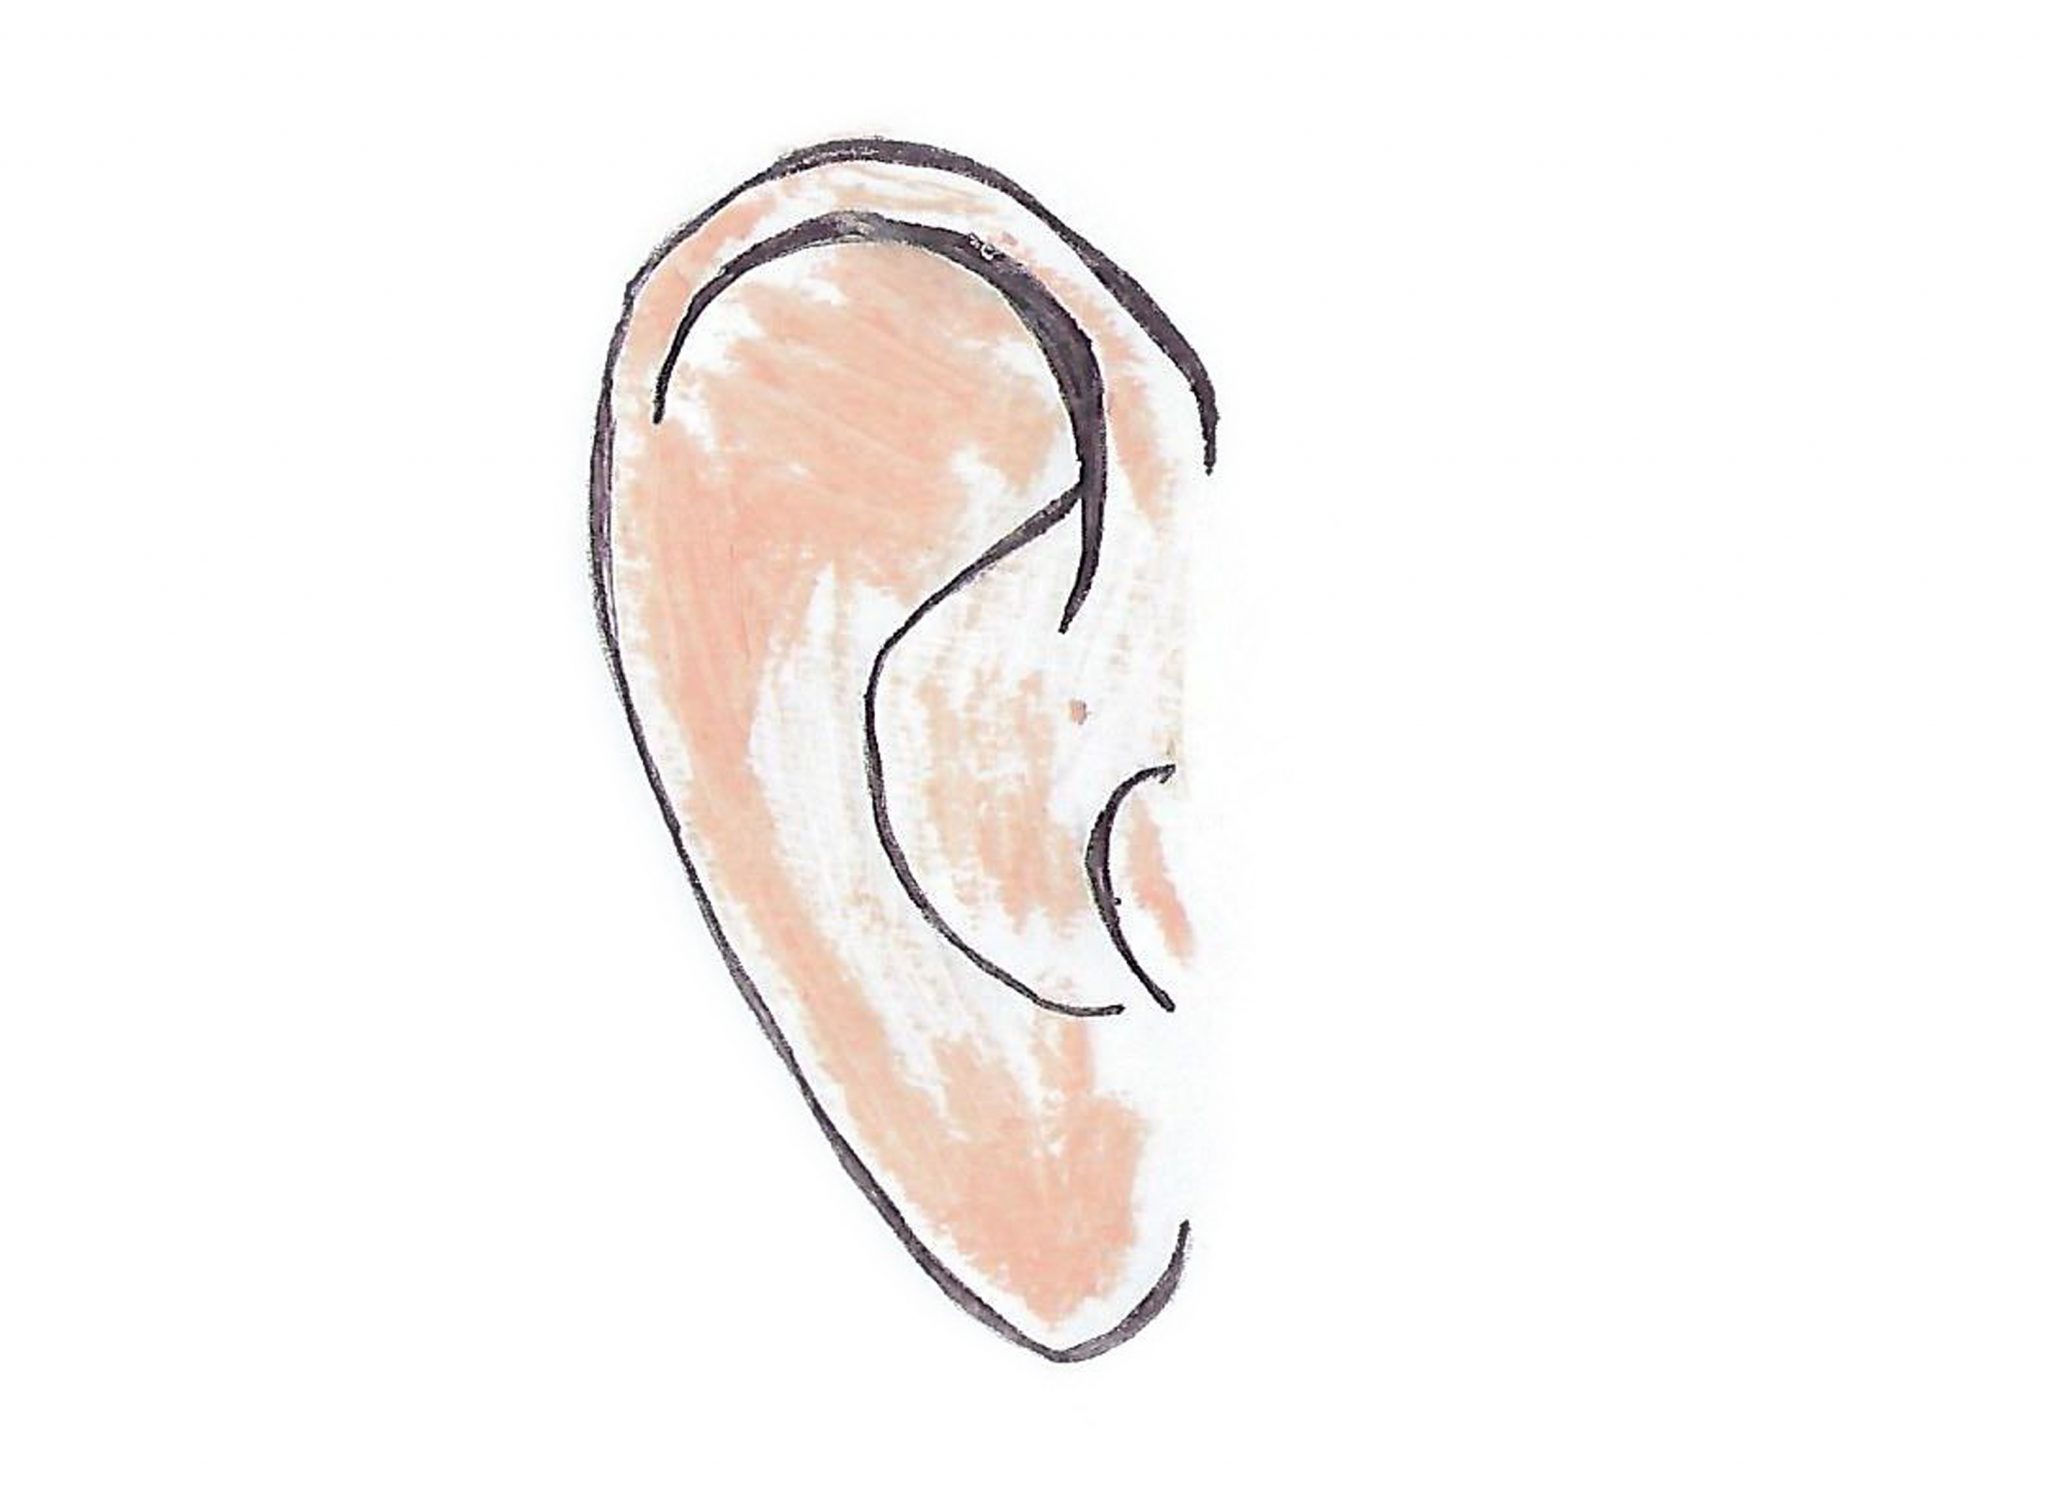 Ухо	— The ear